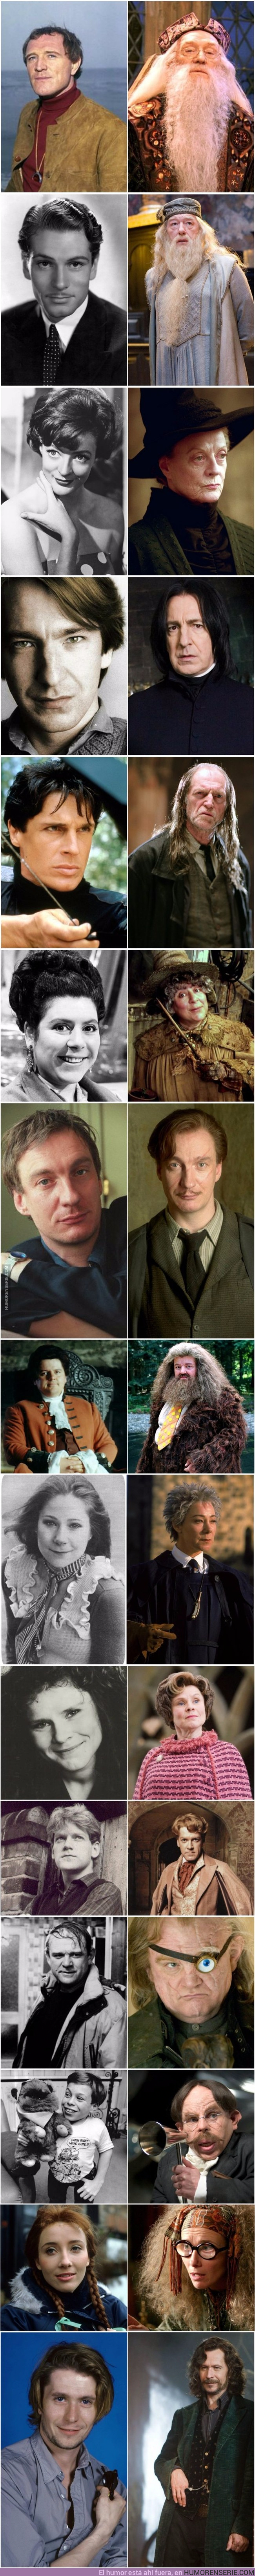 17506 - 15 Imágenes de los profesores de Hogwarts cuando eran jóvenes